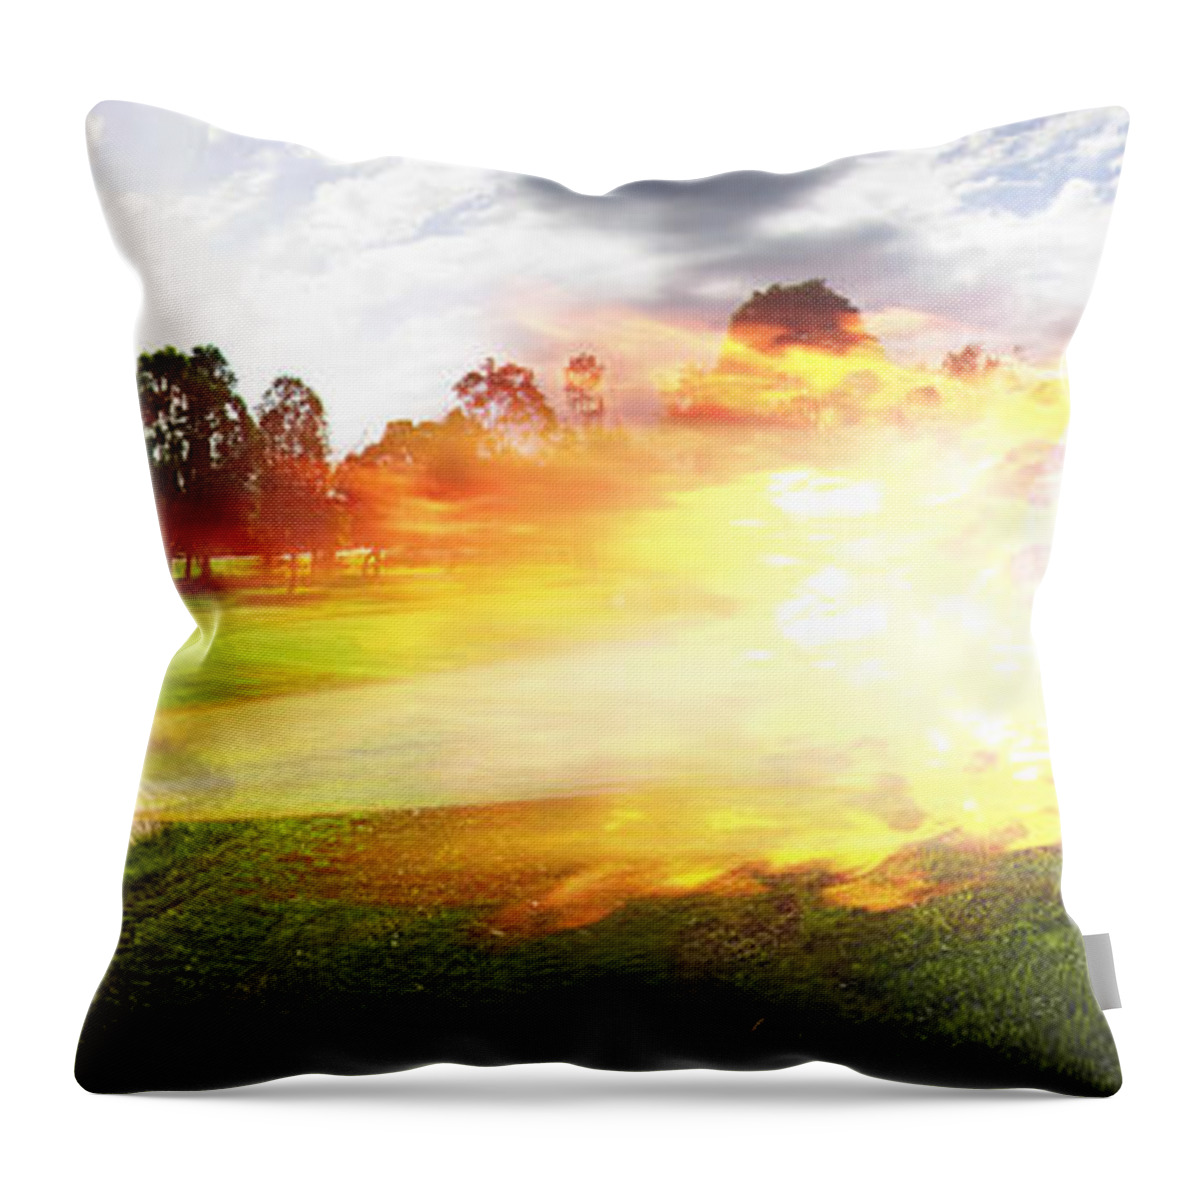 Golf Throw Pillow featuring the digital art Golf Ball On Fire by Jorgo Photography